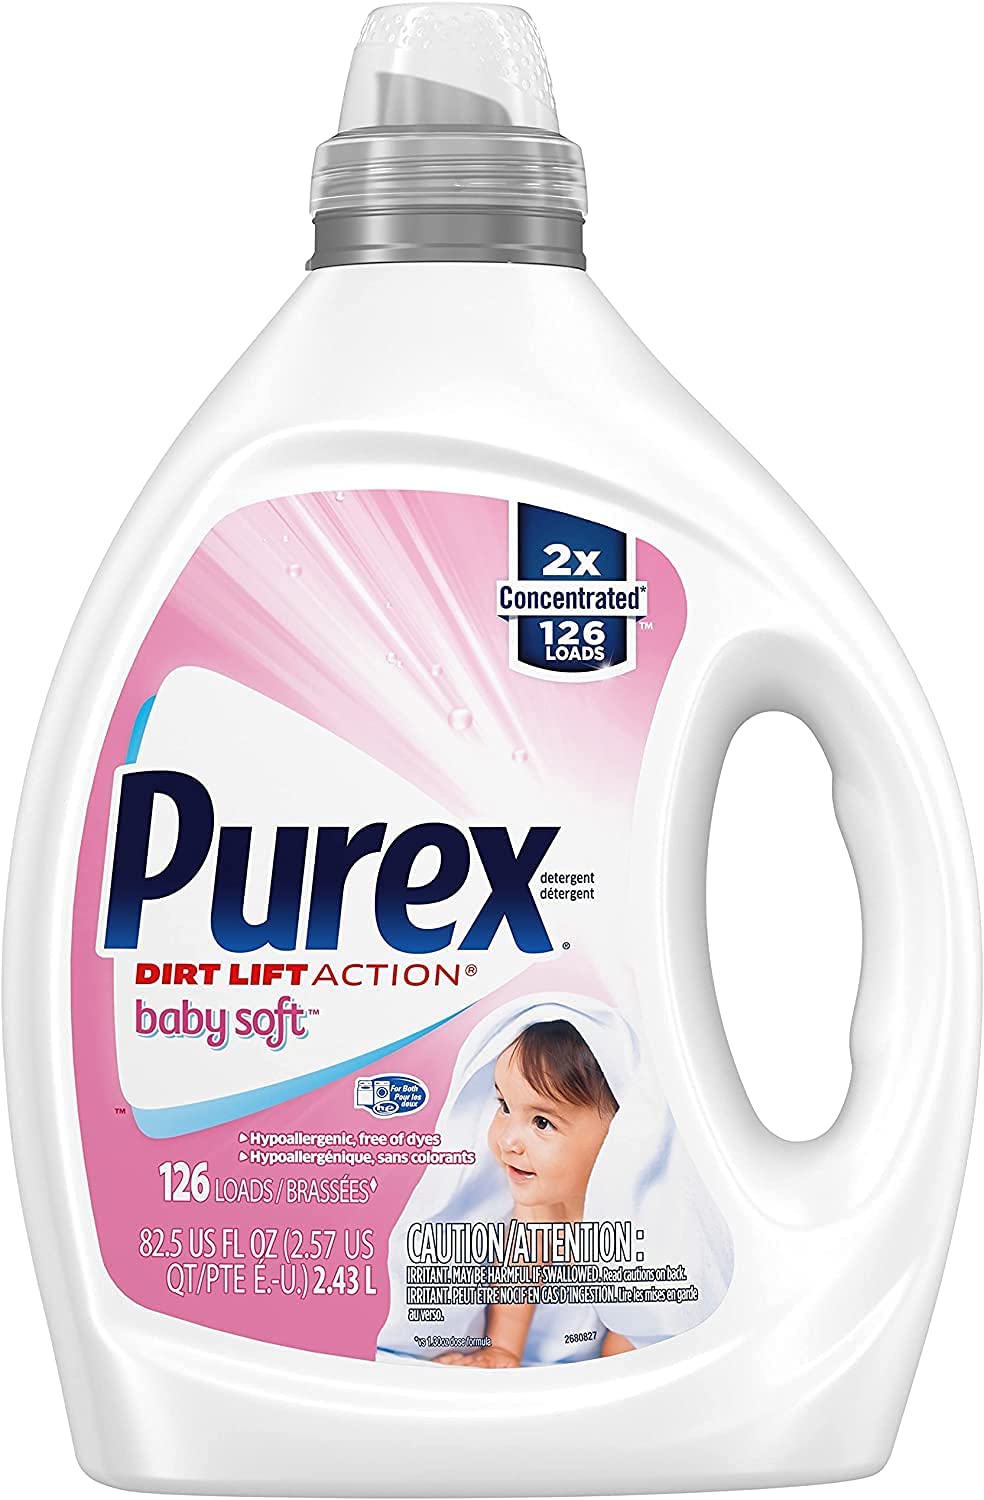 Purex Liquid Baby Laundry Detergent